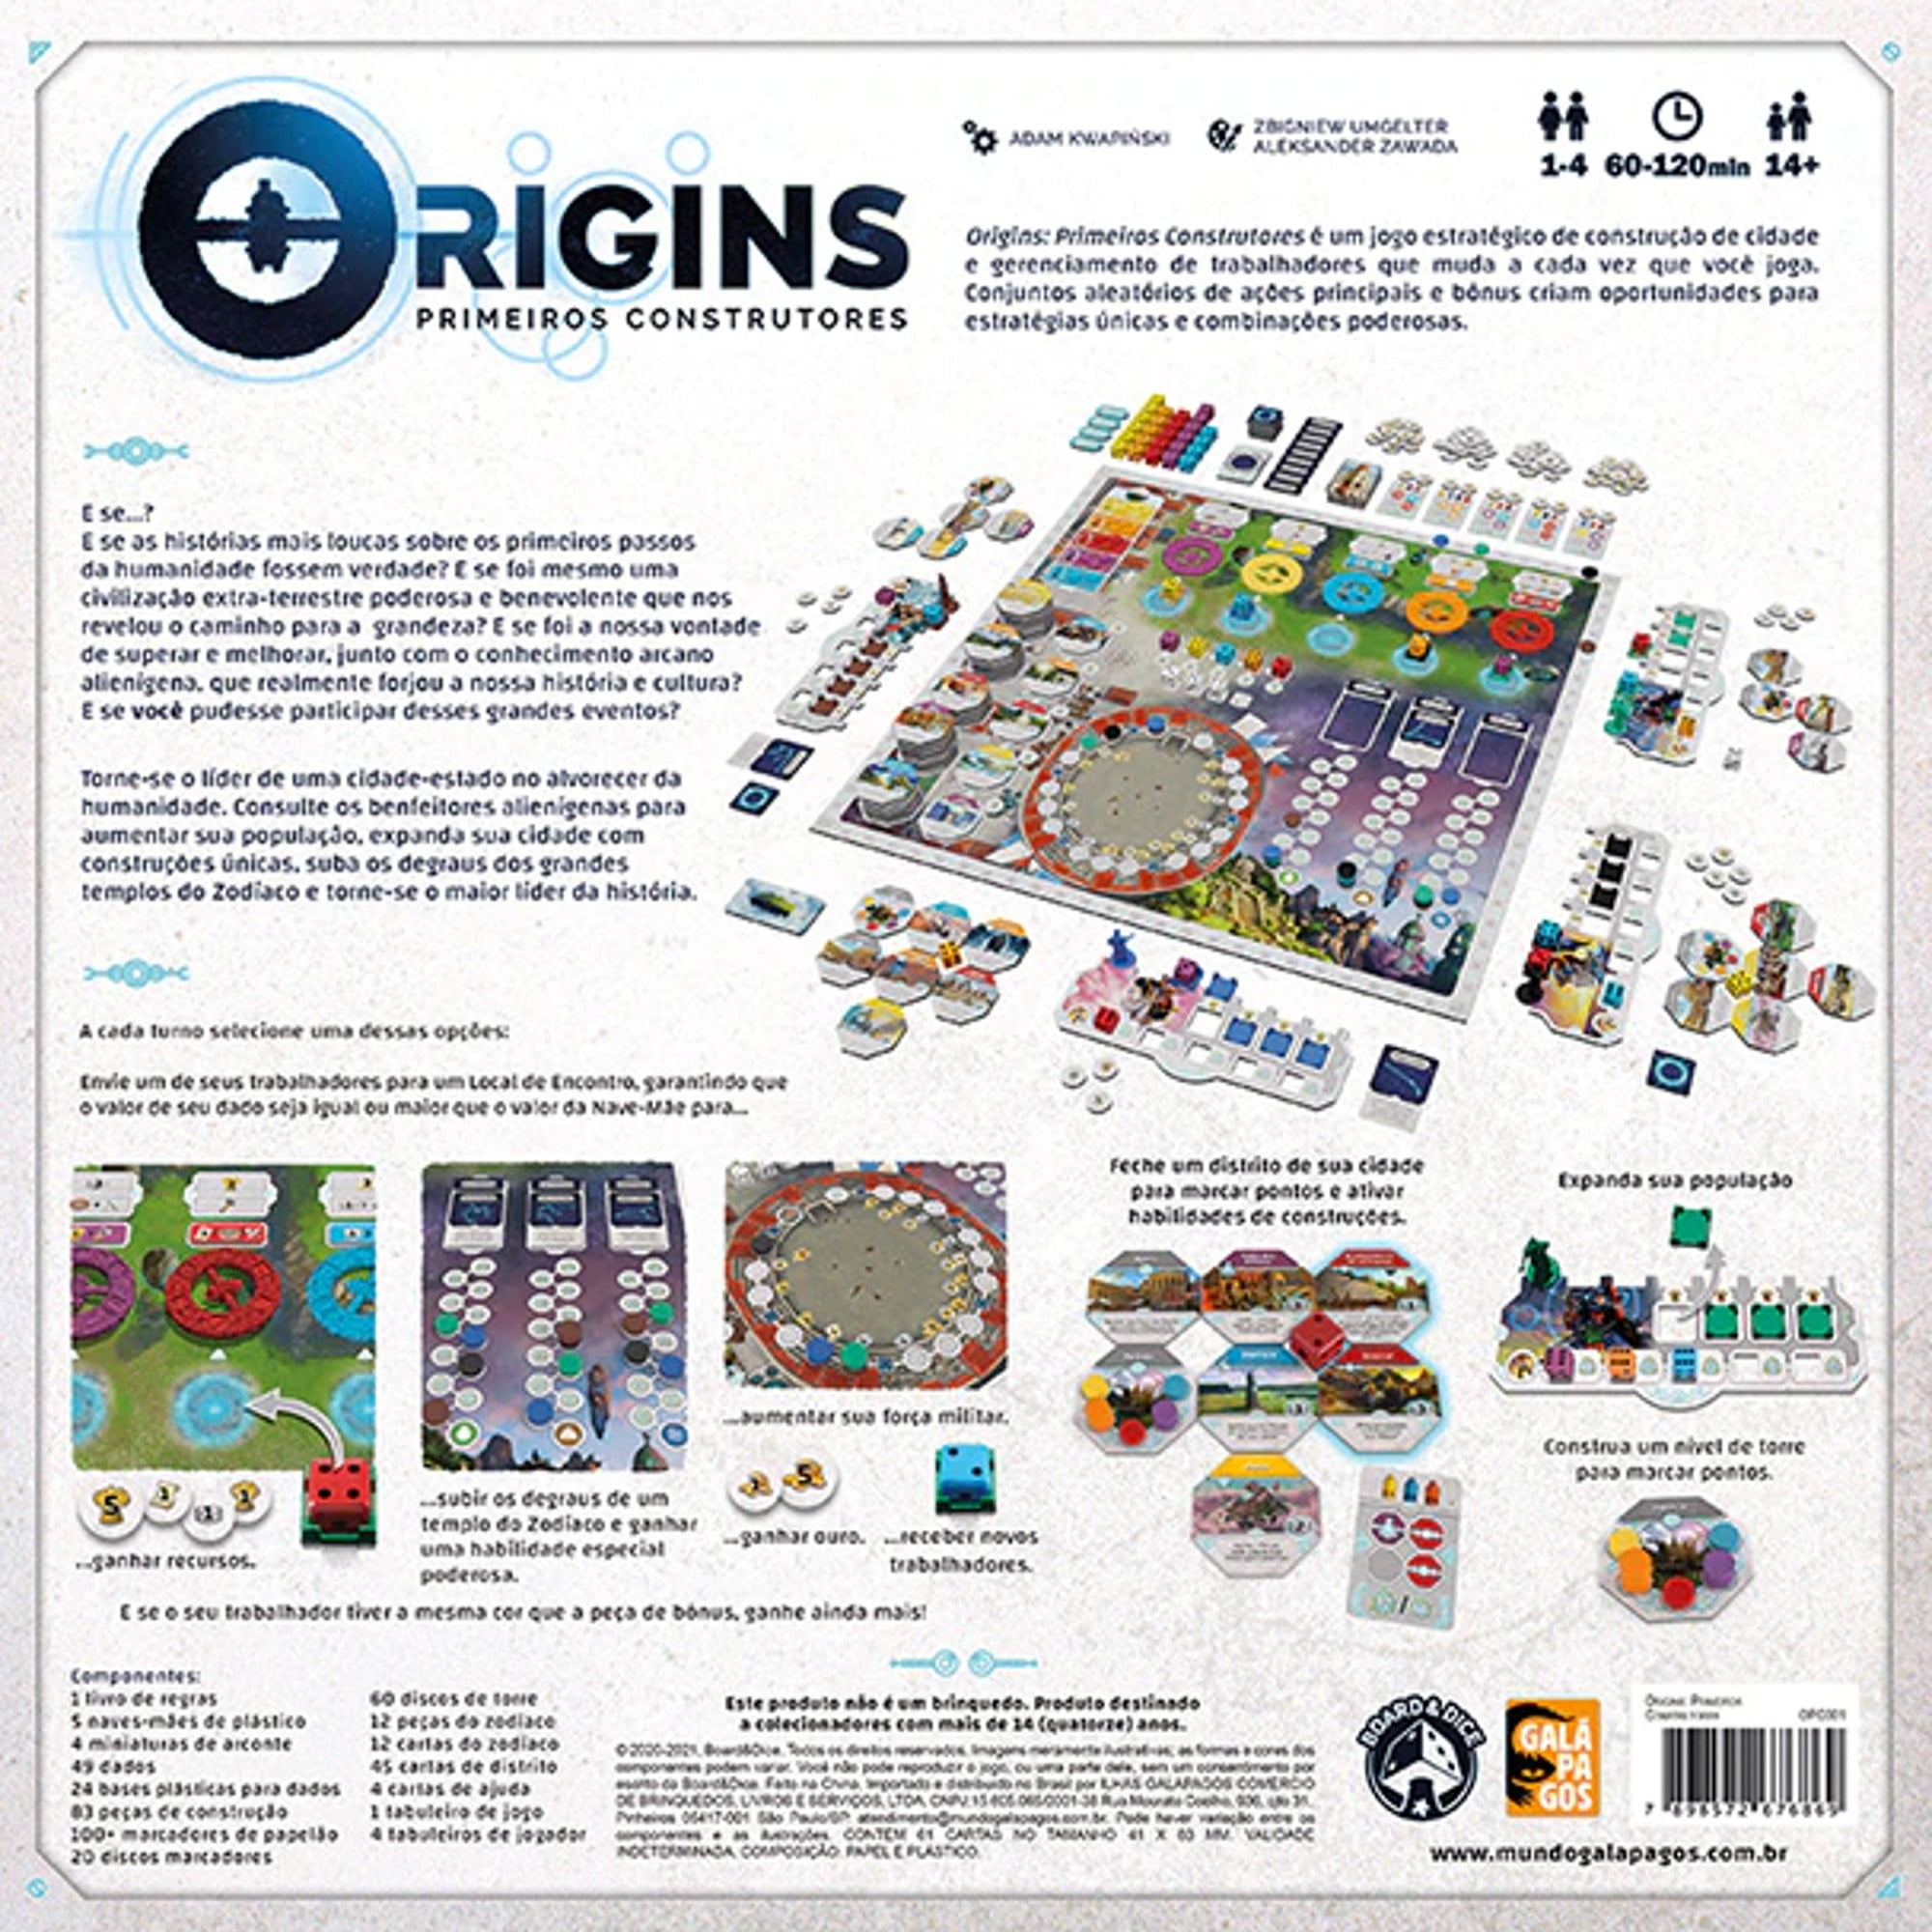 Origins: Primeiros Construtores board game